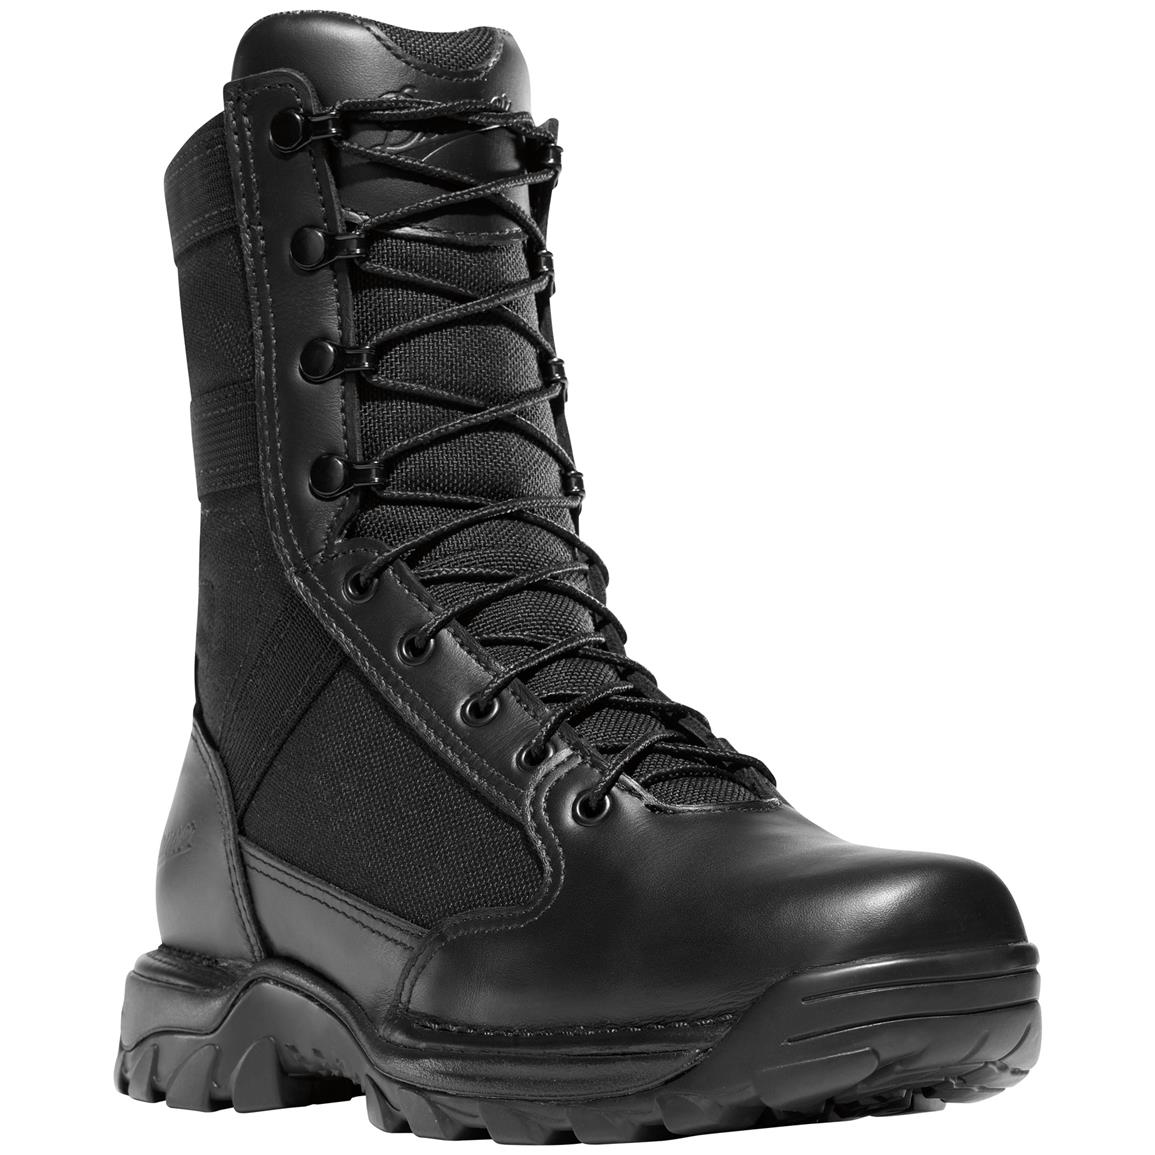 Women's Danner 8" Rivot TFX GORE-TEX Waterproof Combat Boots, Black